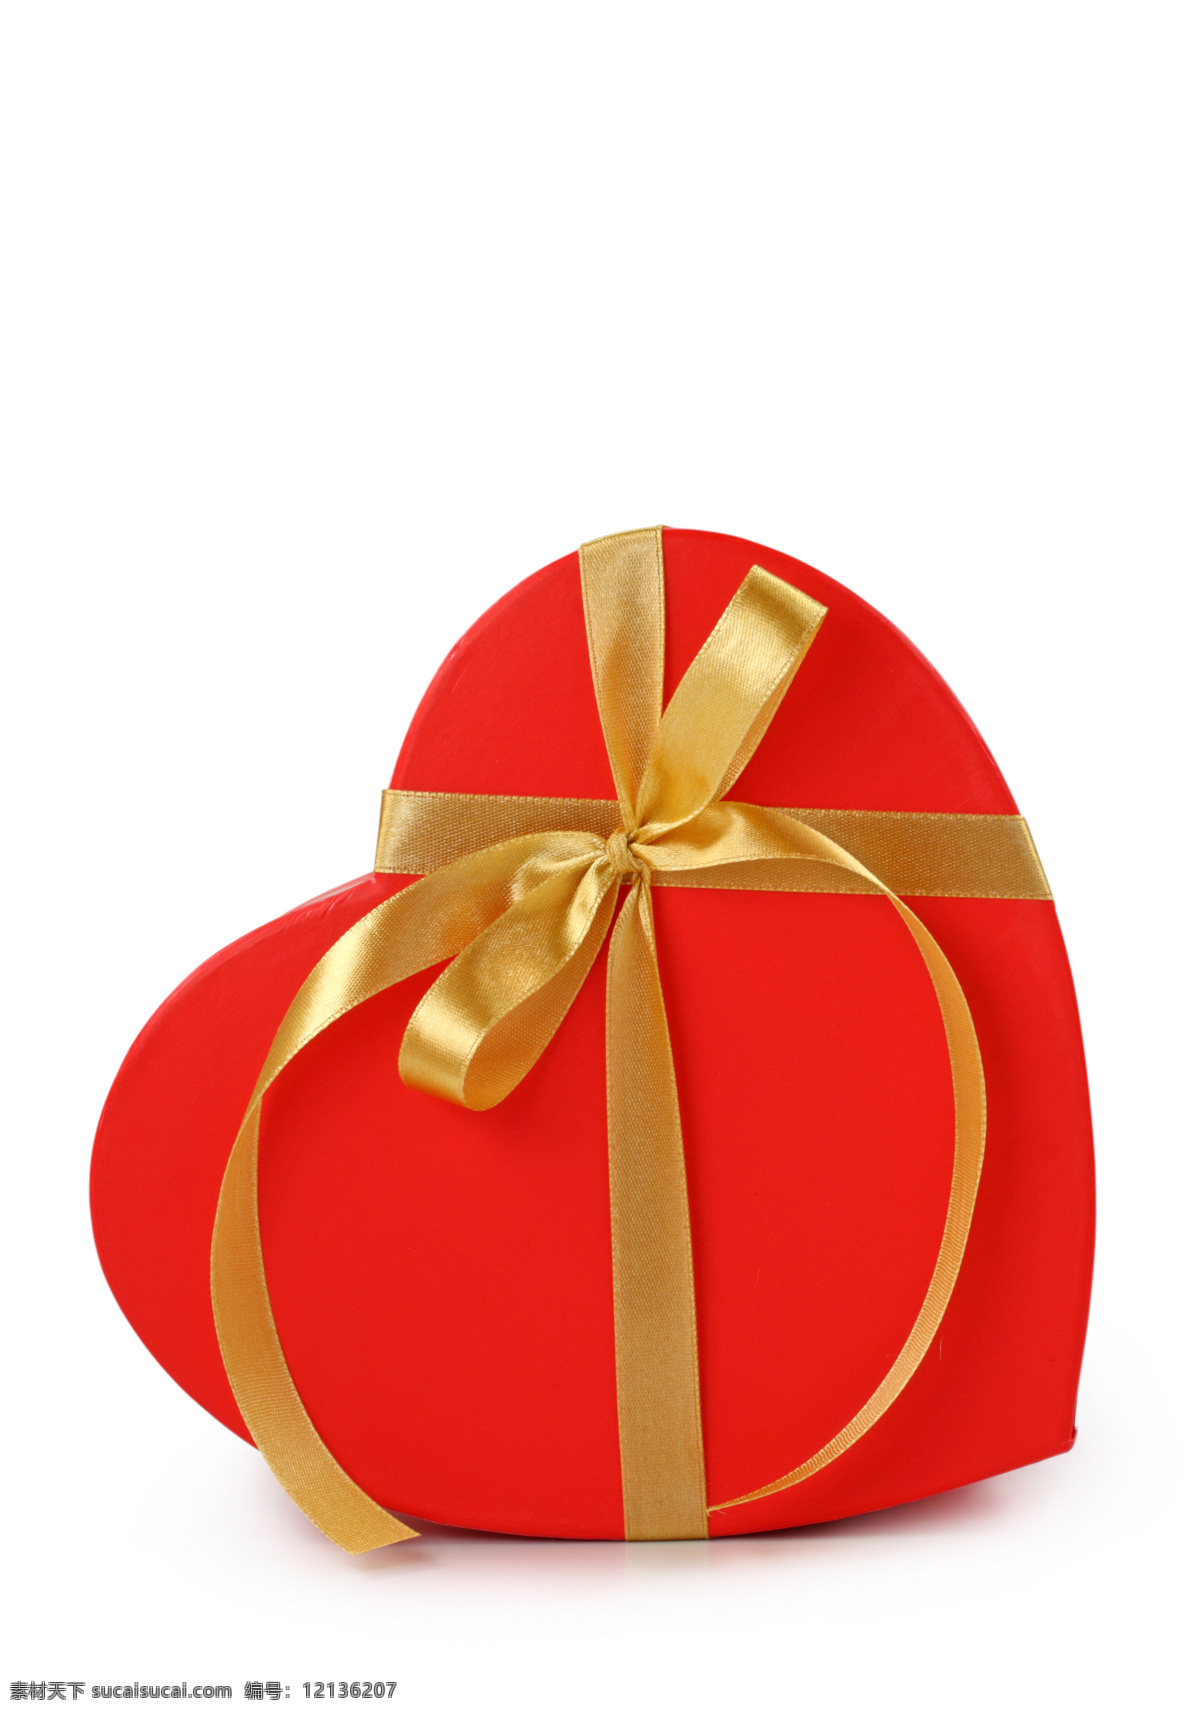 红色 心形 礼物 盒 物品 樱桃形状 爱情 红心 情人节素材 3d作品 3d设计 礼盒 其他类别 生活百科